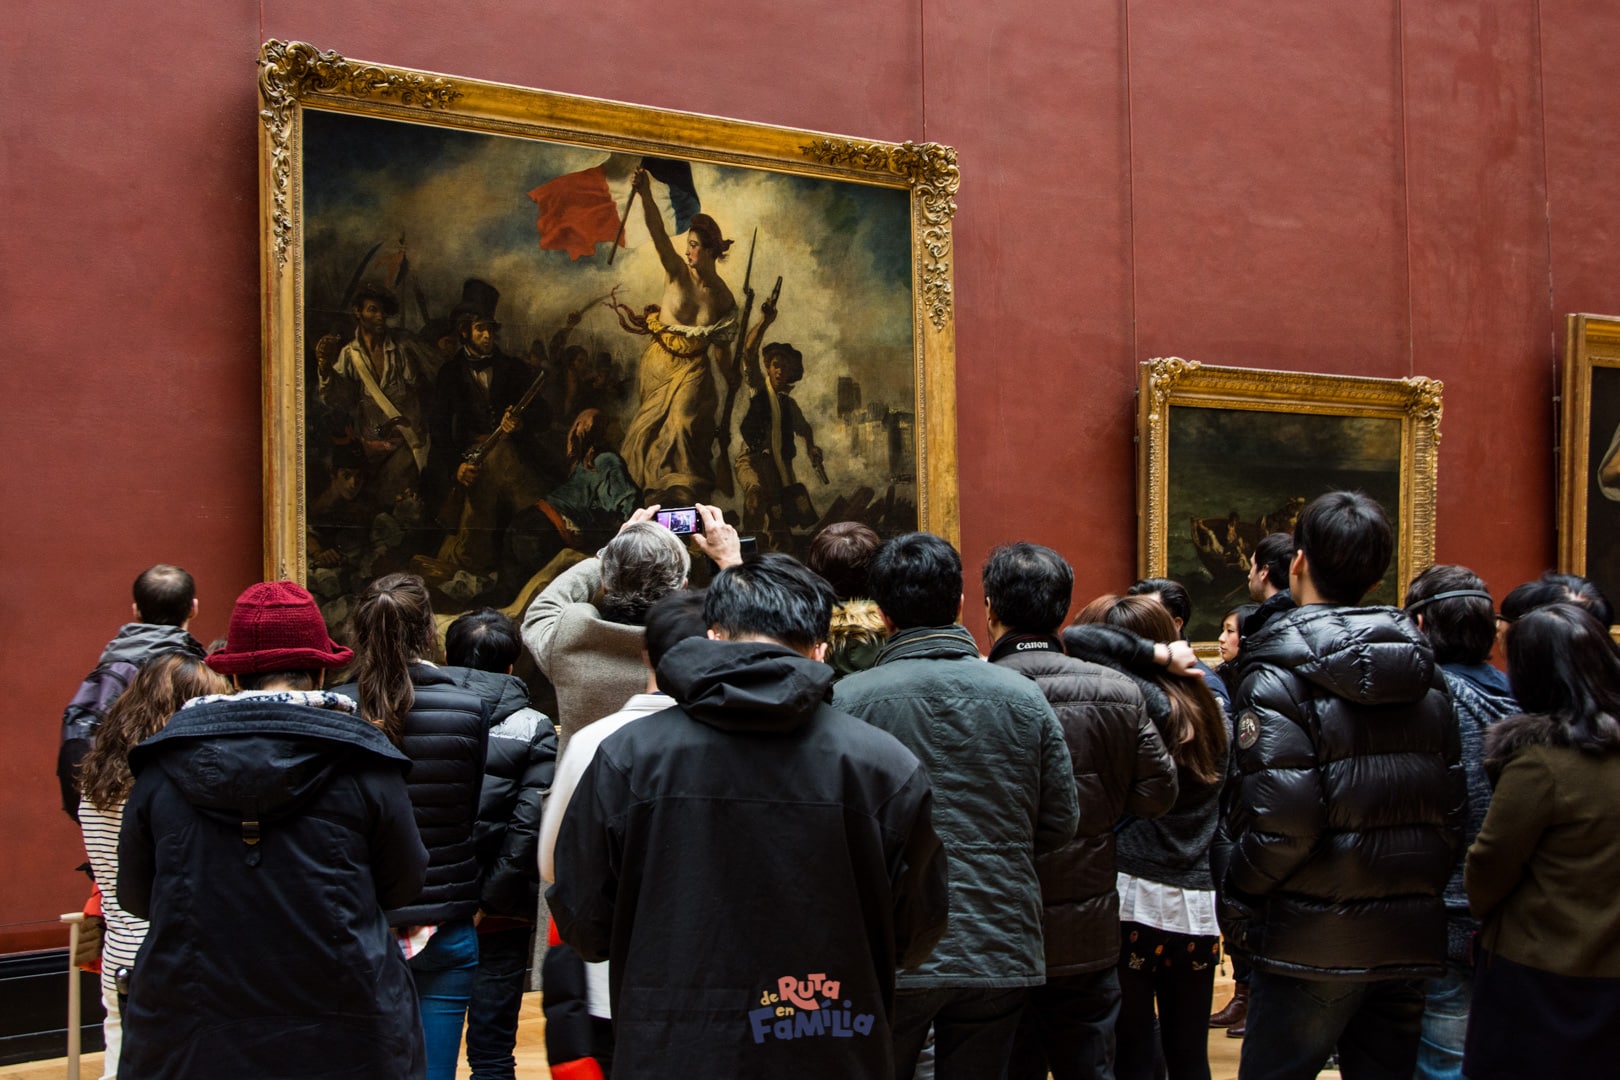 La libertad guiando al pueblo de Eugène Delacroix